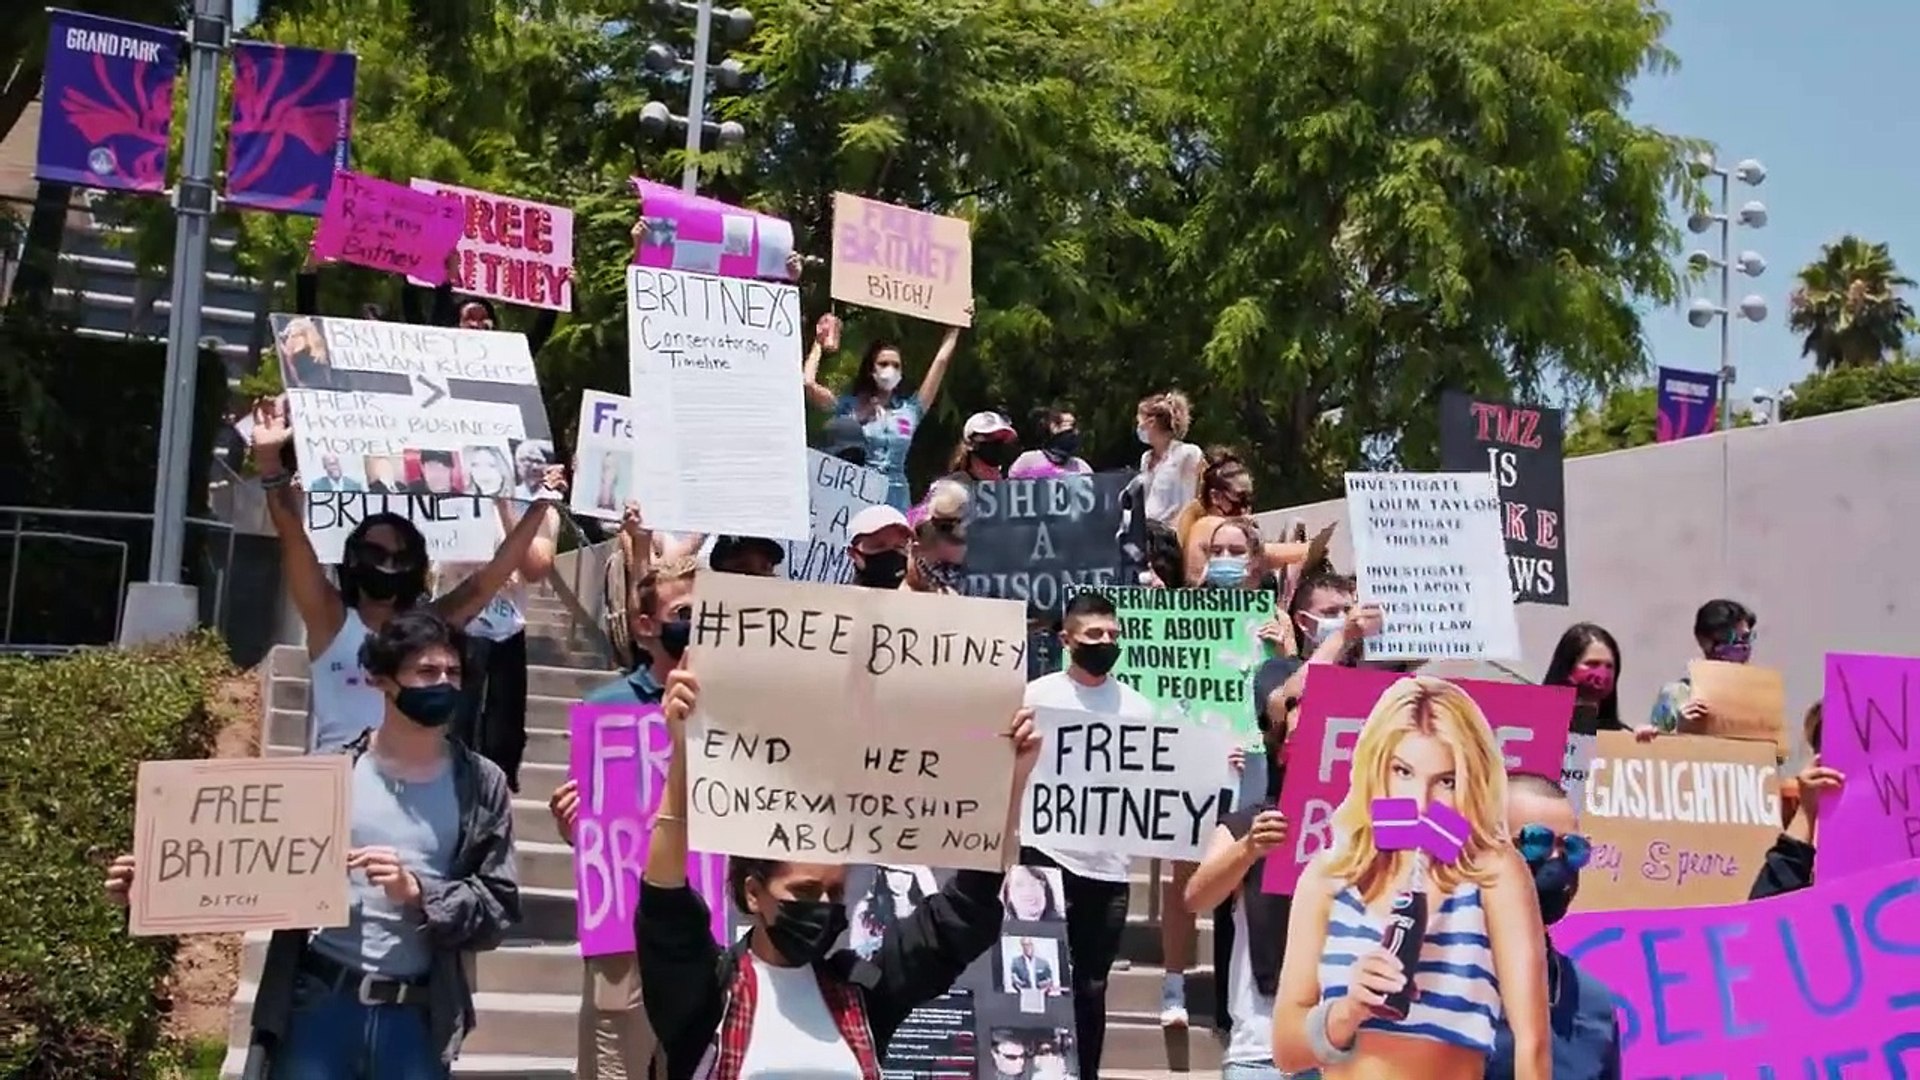 A imagem mostra um protesto a favor da liberdade da cantora Britney Spears, que está judicialmente dependente de seu pai em uma conservadoria. A foto é uma cena do documentário Framing Britney Spears, e mostra diversas pessoas na calçada de uma rua com cartazes pedindo a liberdade da cantora.